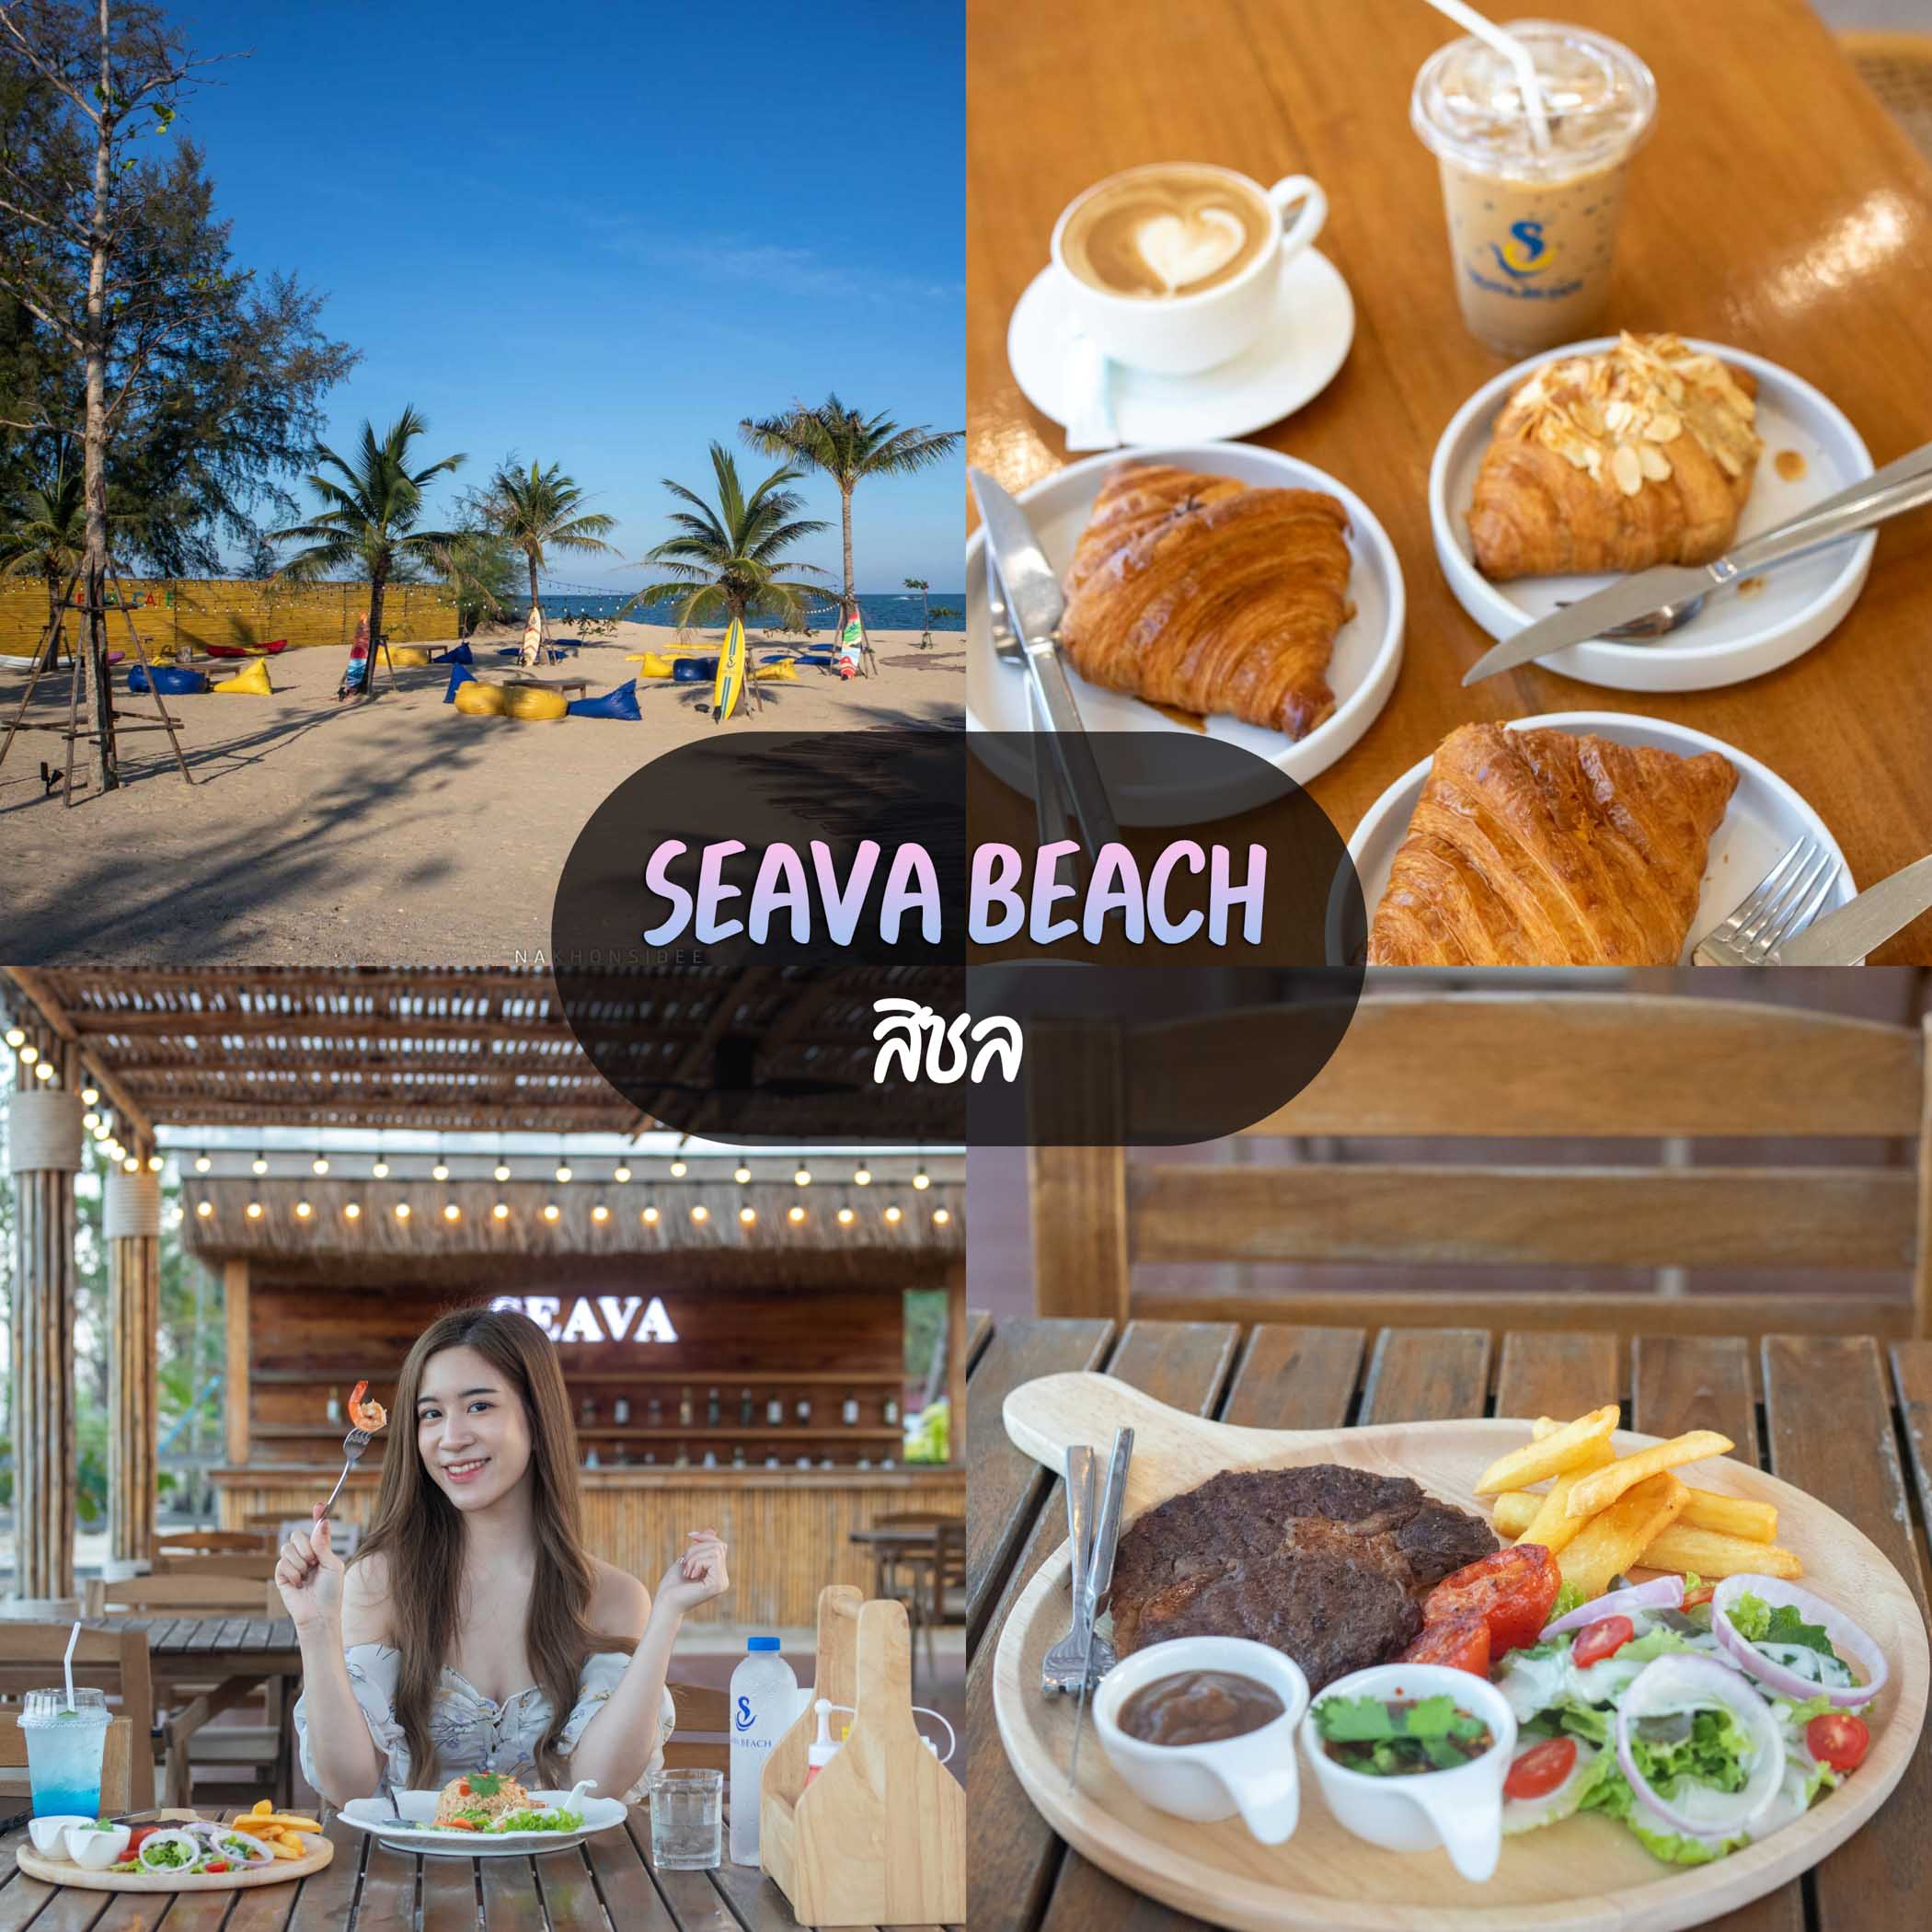 Seava-Beach-สิชล เป็นทั้งคาเฟ่-ร้านอาหาร-และรีสอร์ทกันเลยทีเดียวว ร้านอาหารนครศรีธรรมราช,ของกิน,ร้านอาหาร,อร่อย,ก๋วยเตี๋ยว,คาเฟ่,ร้านเด็ด,ชาบู,ปิ้งย่าง,อาหารญี่ปุ่น,ร้านอร่อย,อาหารพื้นบ้าน